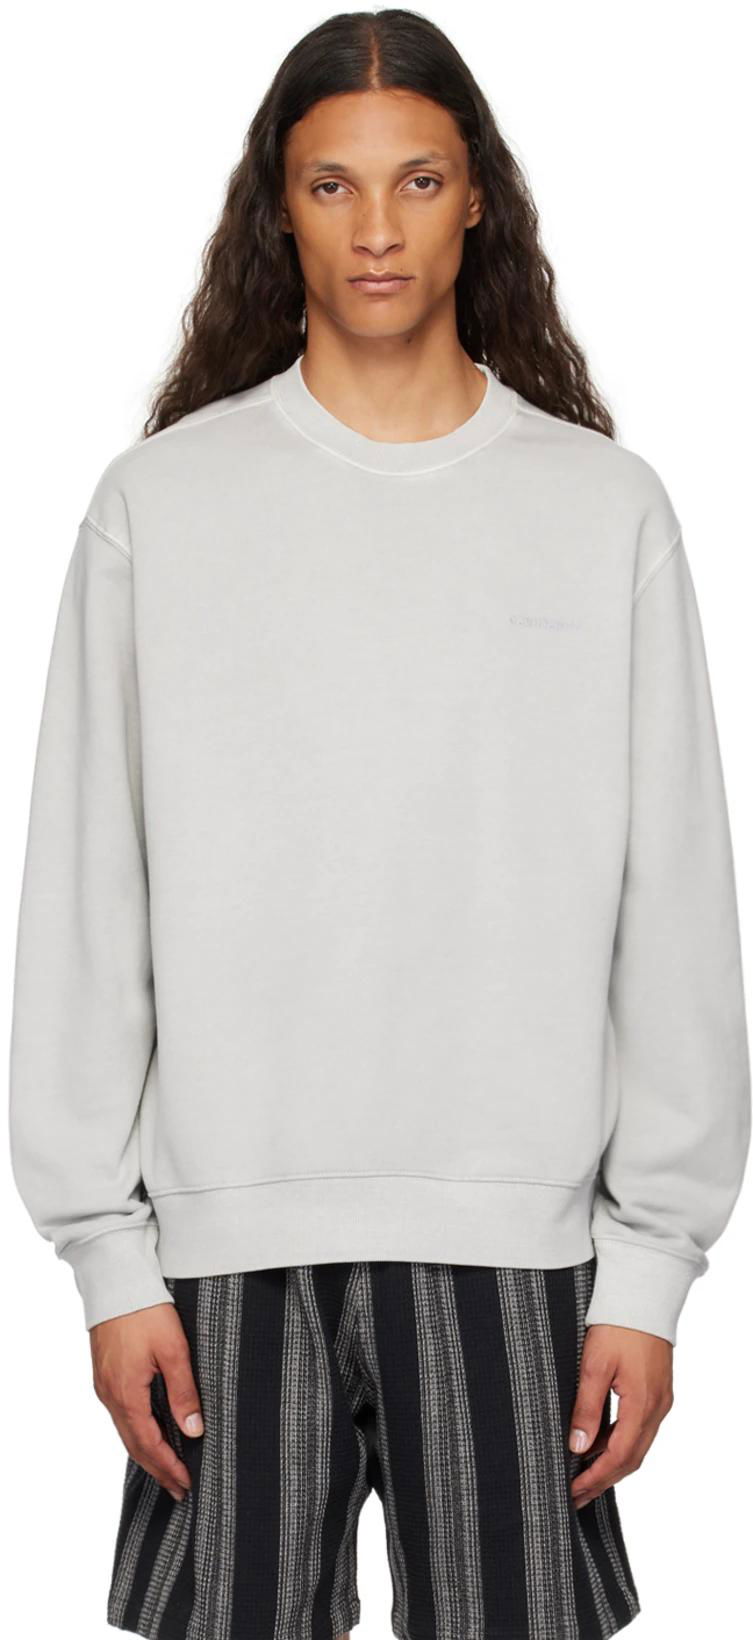 Gray Duster Script Sweatshirt by CARHARTT WIP